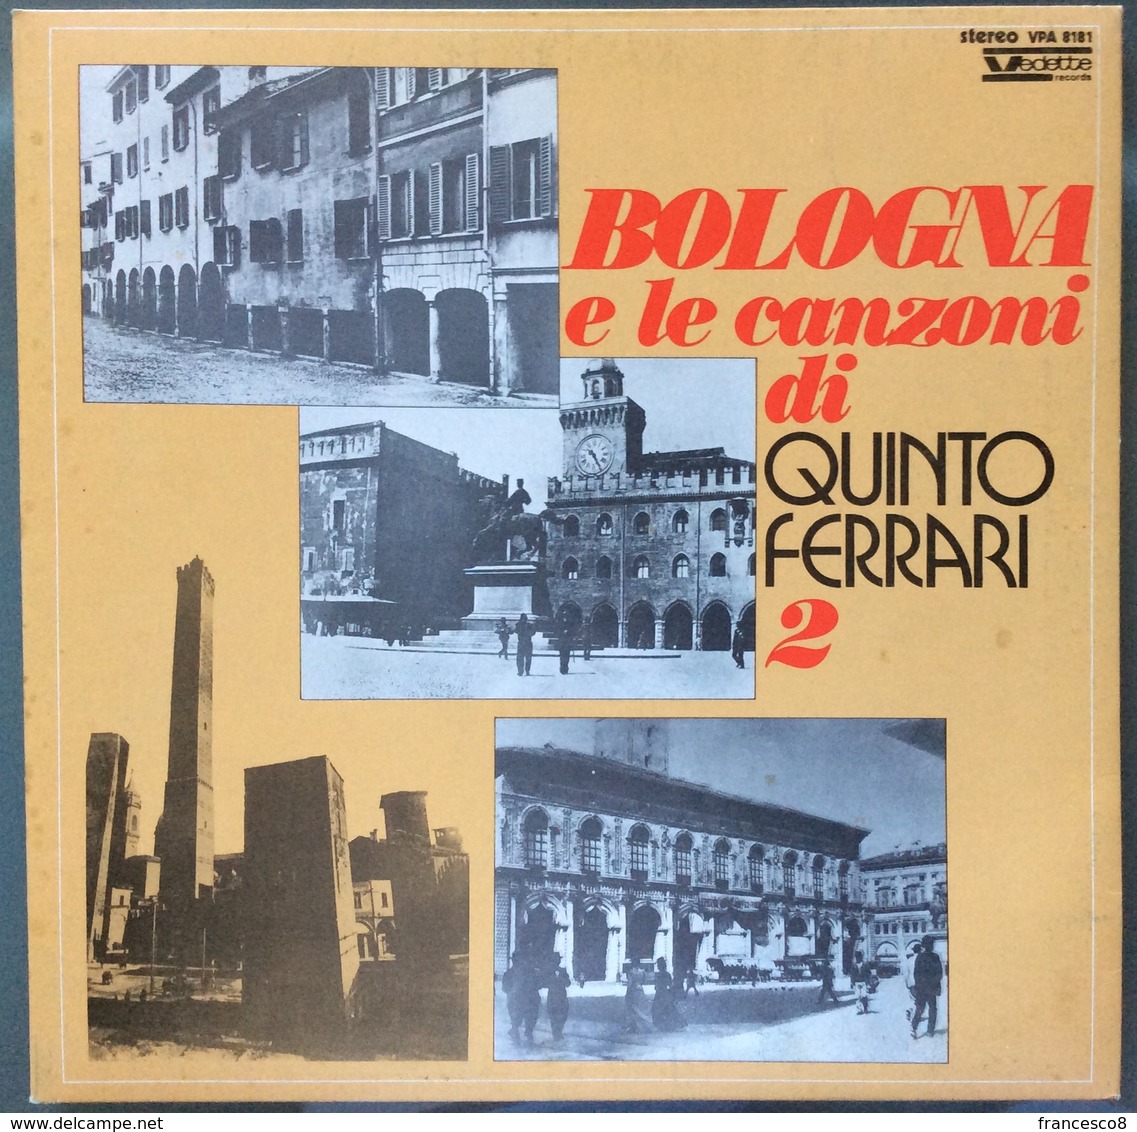 LP 33 - BOLOGNA E LE CANZONI DI QUINTO FERRARI 2 / Anno 1973 - Altri - Musica Italiana